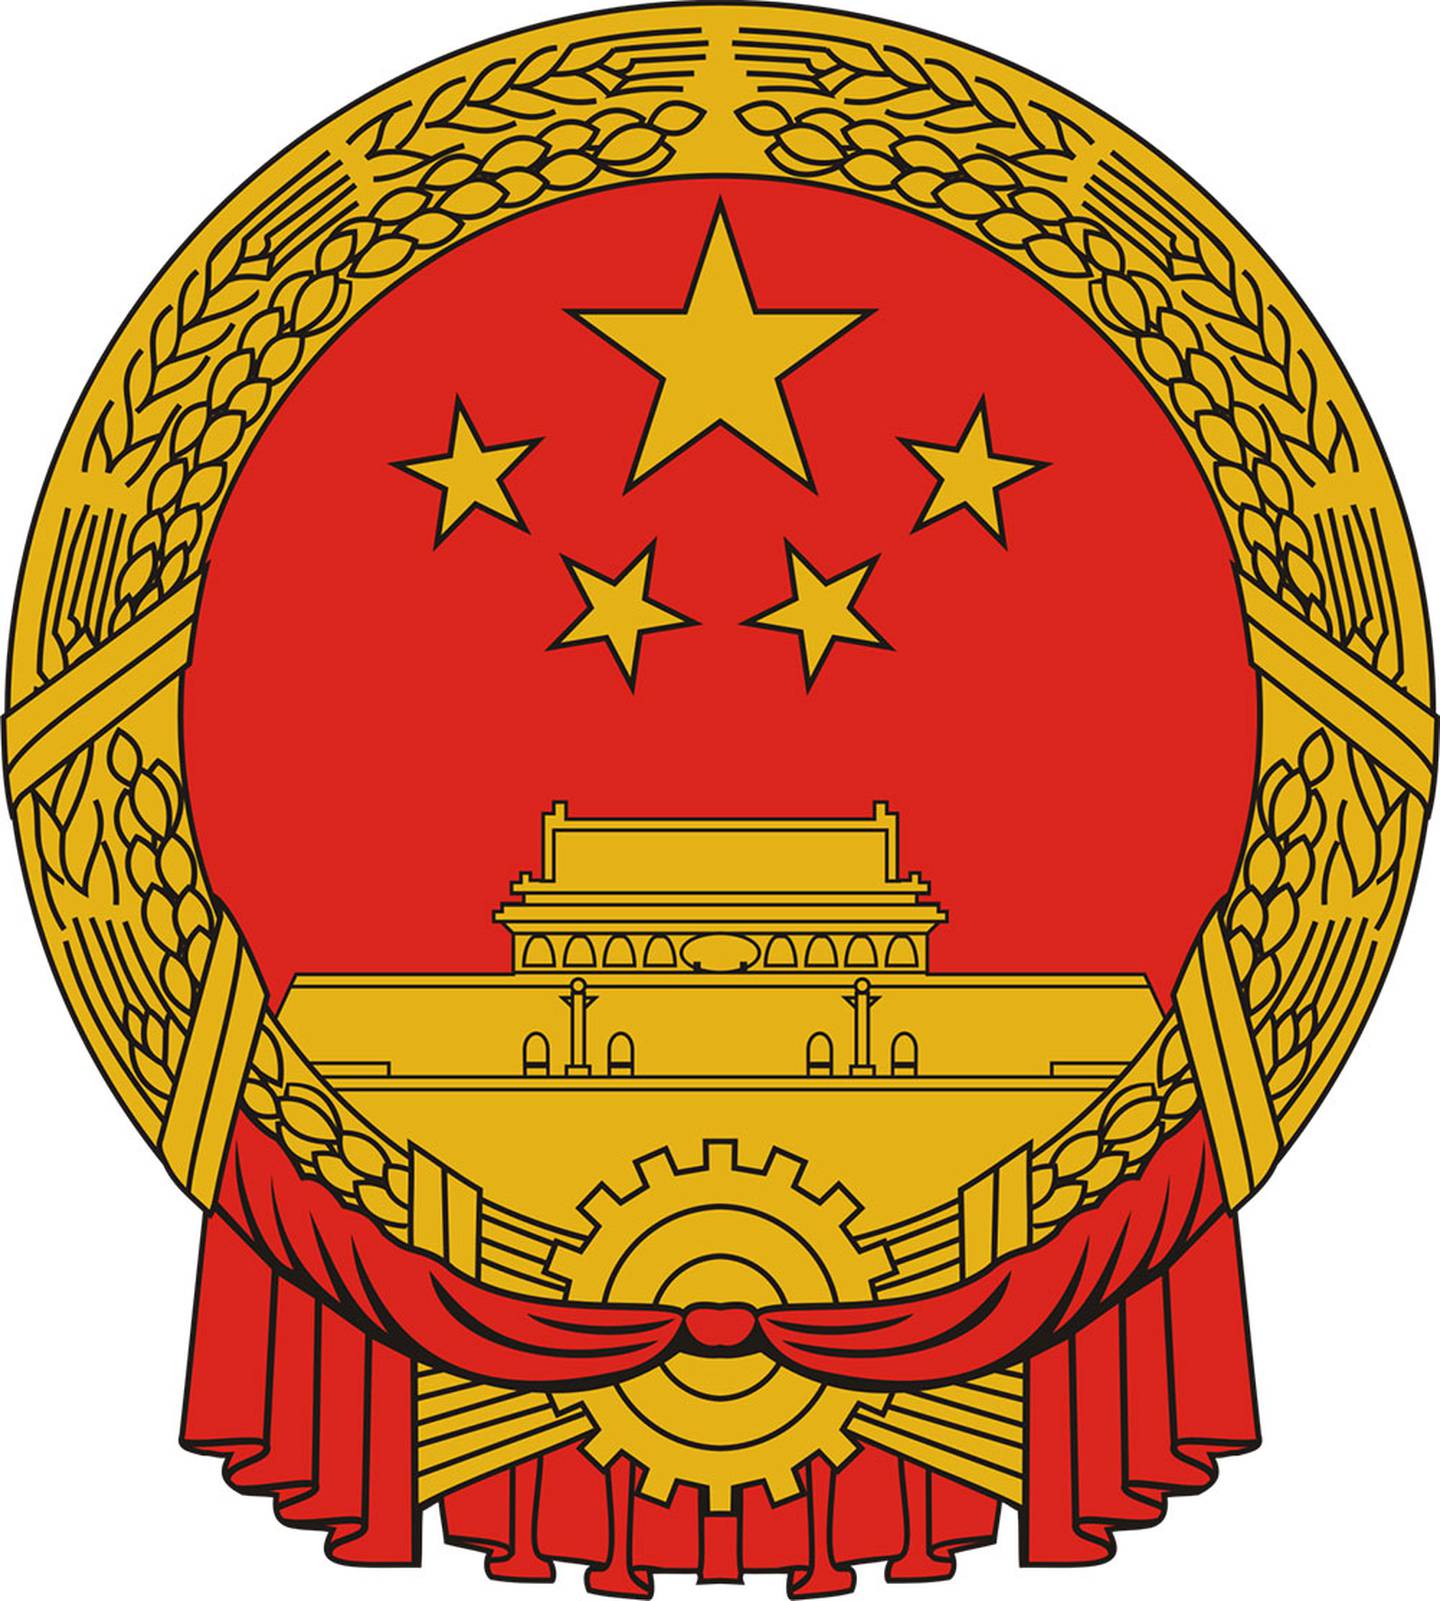 Герб КНР